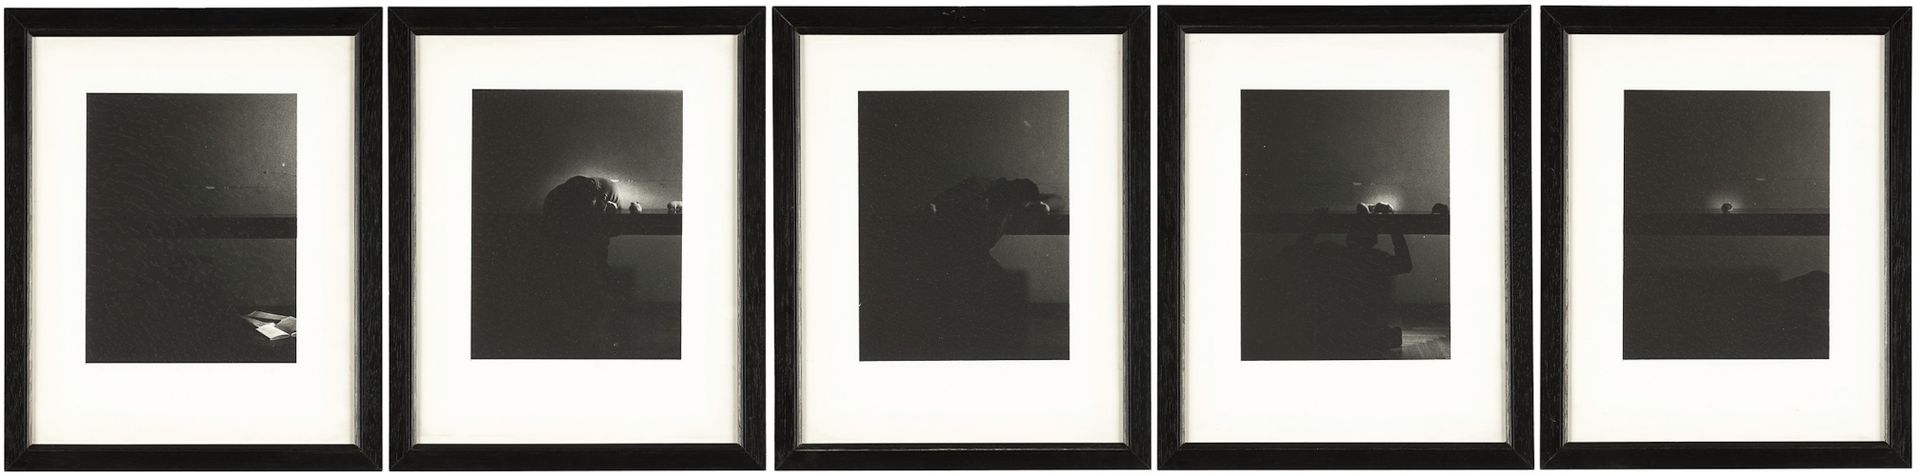 Garutti Alberto, Senza titolo 在一个元素的背面签名，照片，由5个元素组成，宽15-高19厘米，私人收藏，米兰